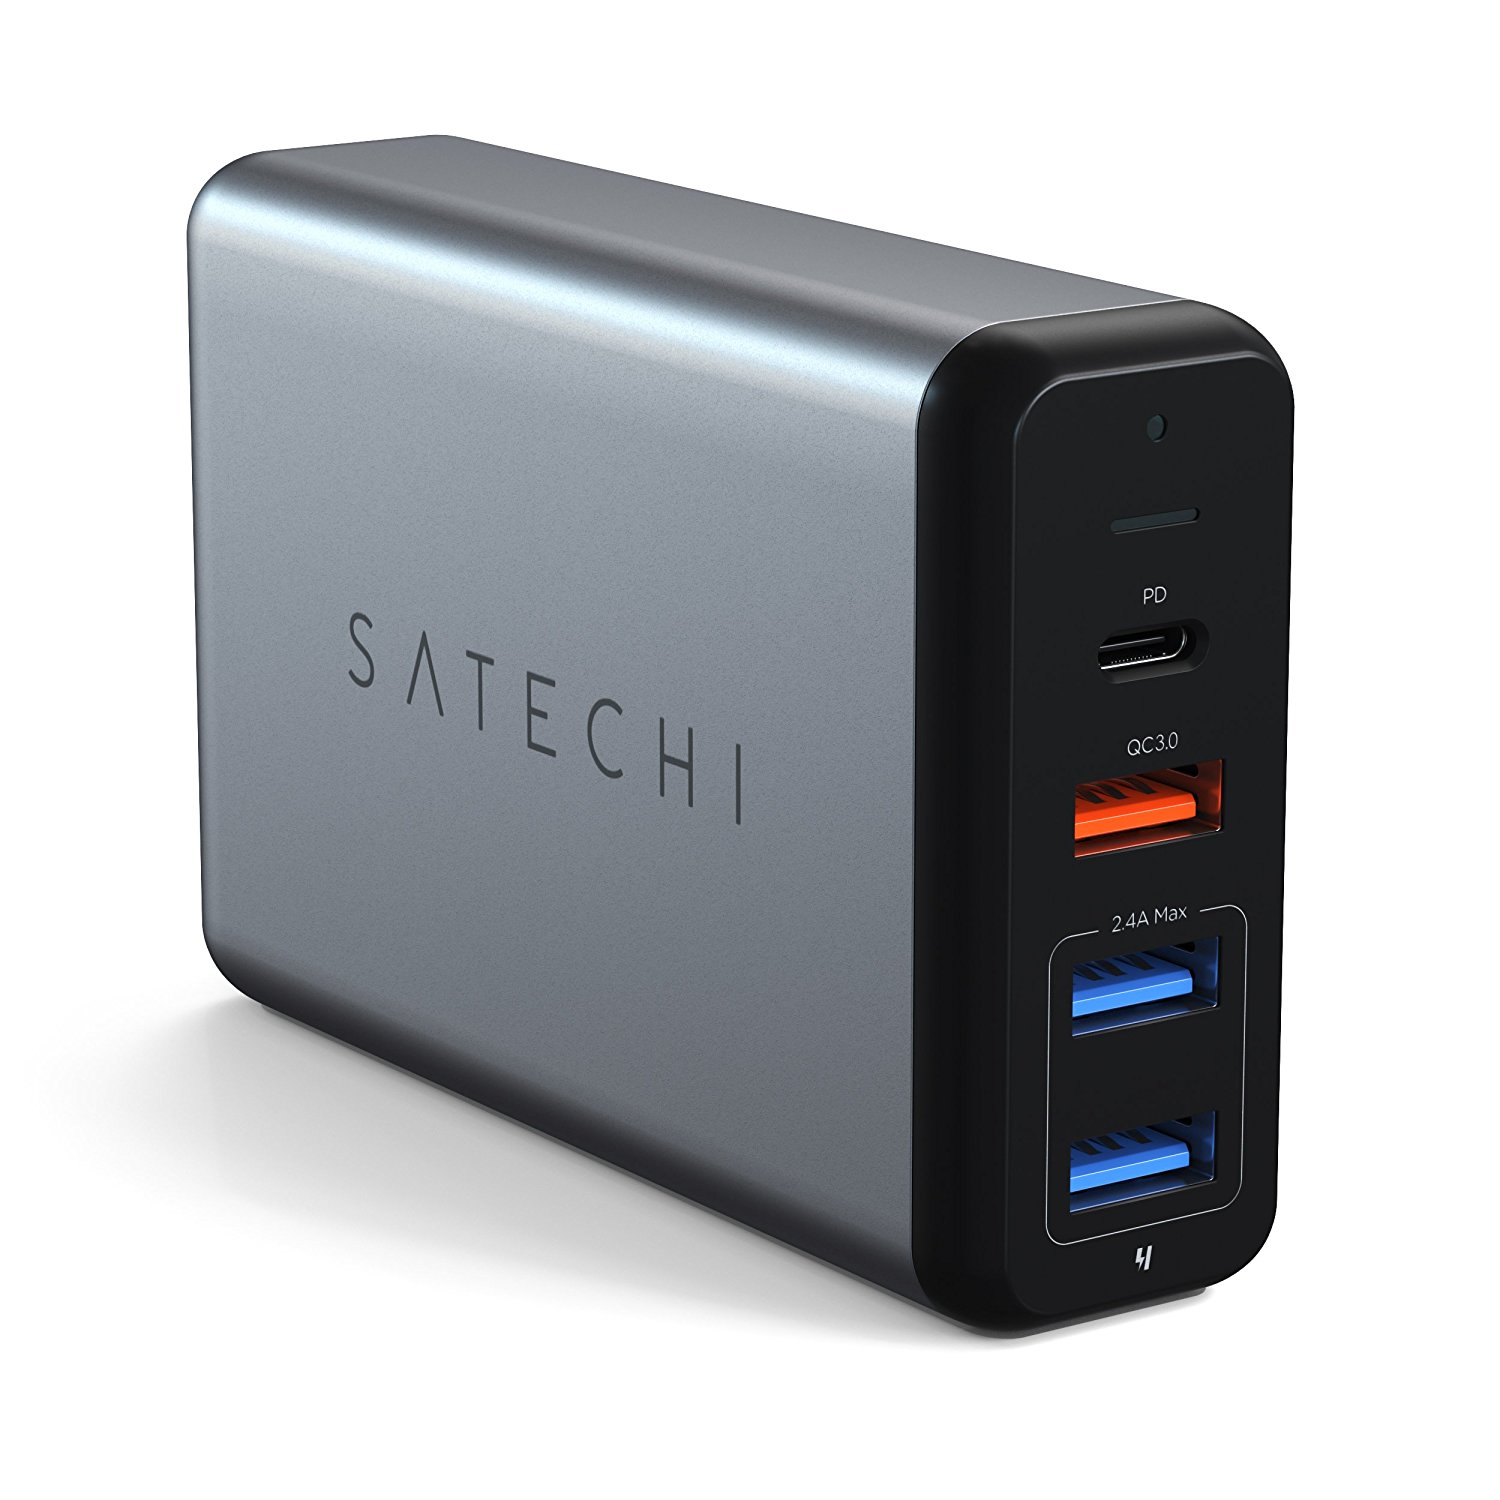 Satechi、USB-CハブやUSB充電器などを最大500円オフで販売するセールを開催中